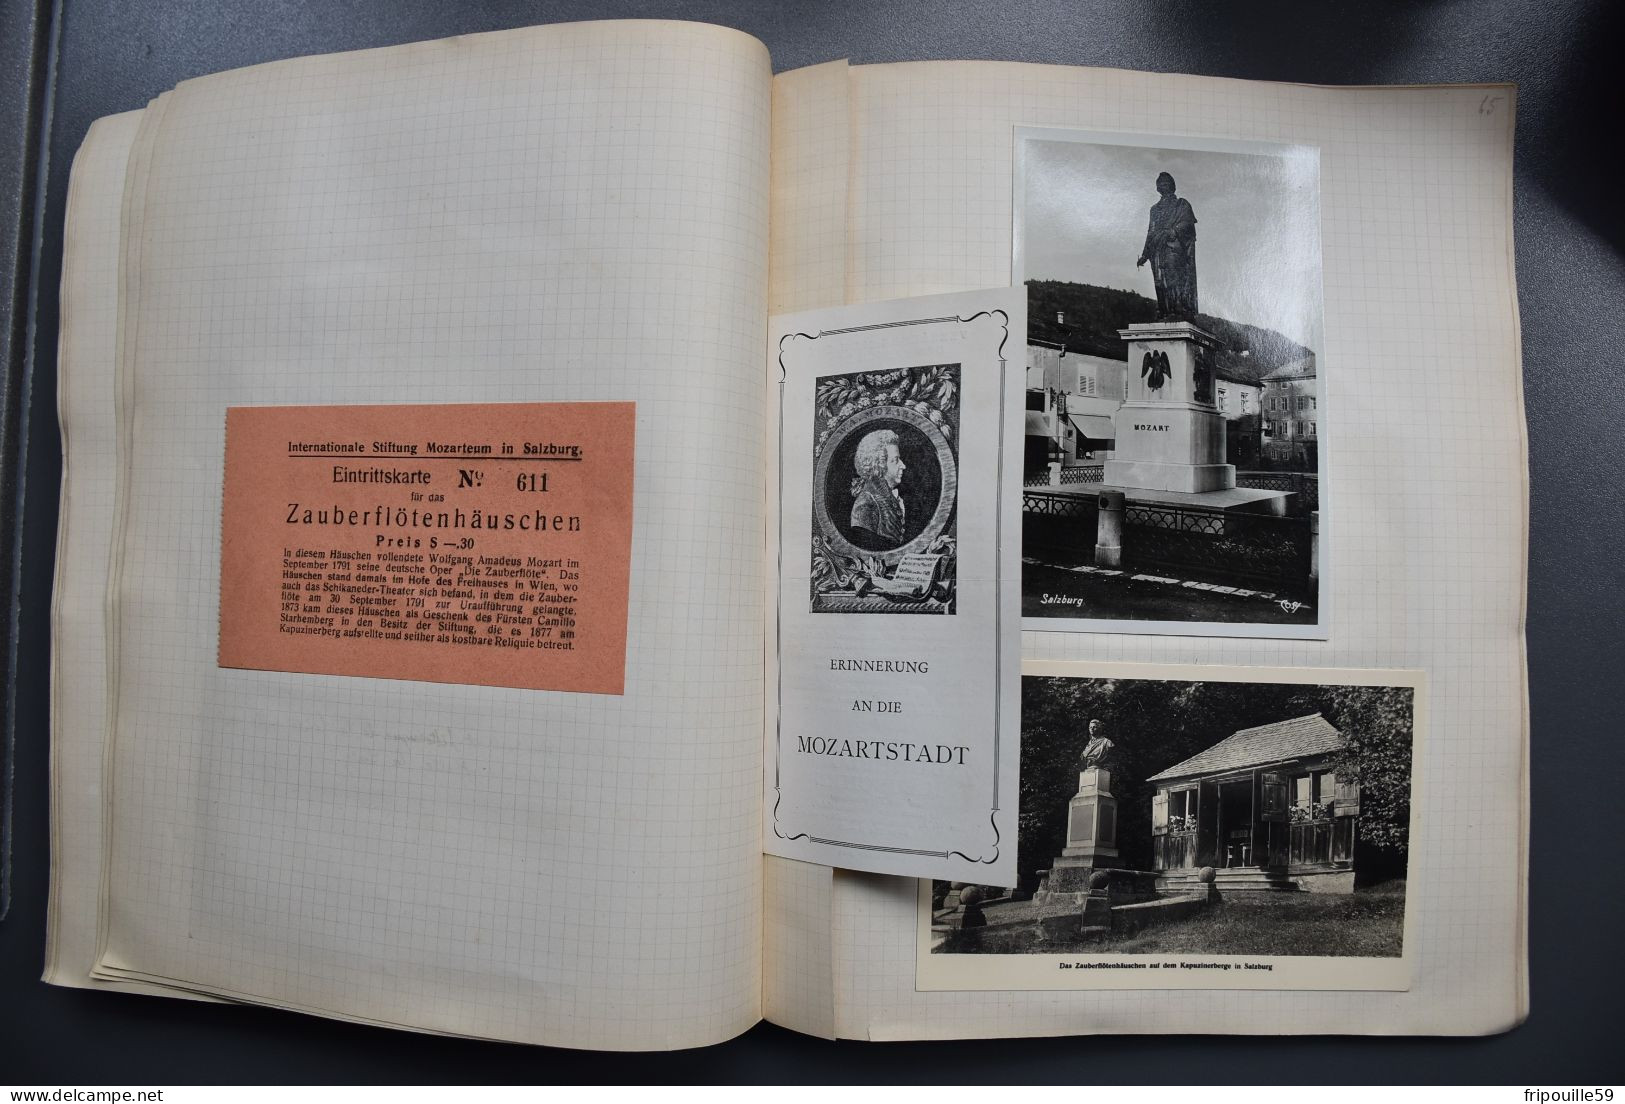 Cahier de voyage - 1931-1938 - 115 cartes et documents divers - Allemagne-Hollande-Luxembourg-Autriche